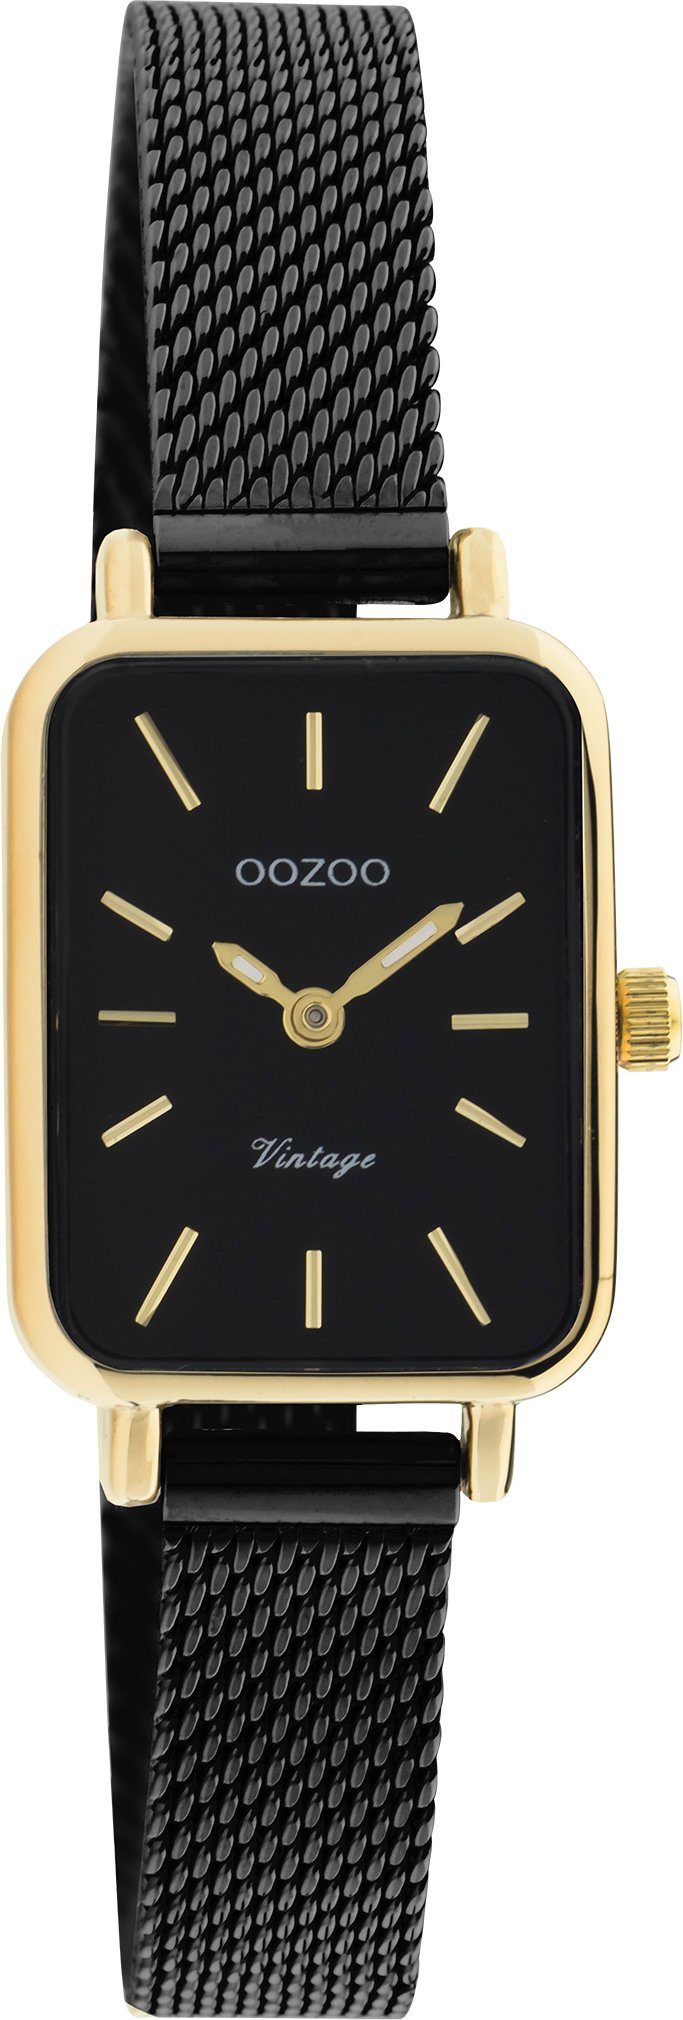 OOZOO Quarzuhr C20269, Armbanduhr, Damenuhr